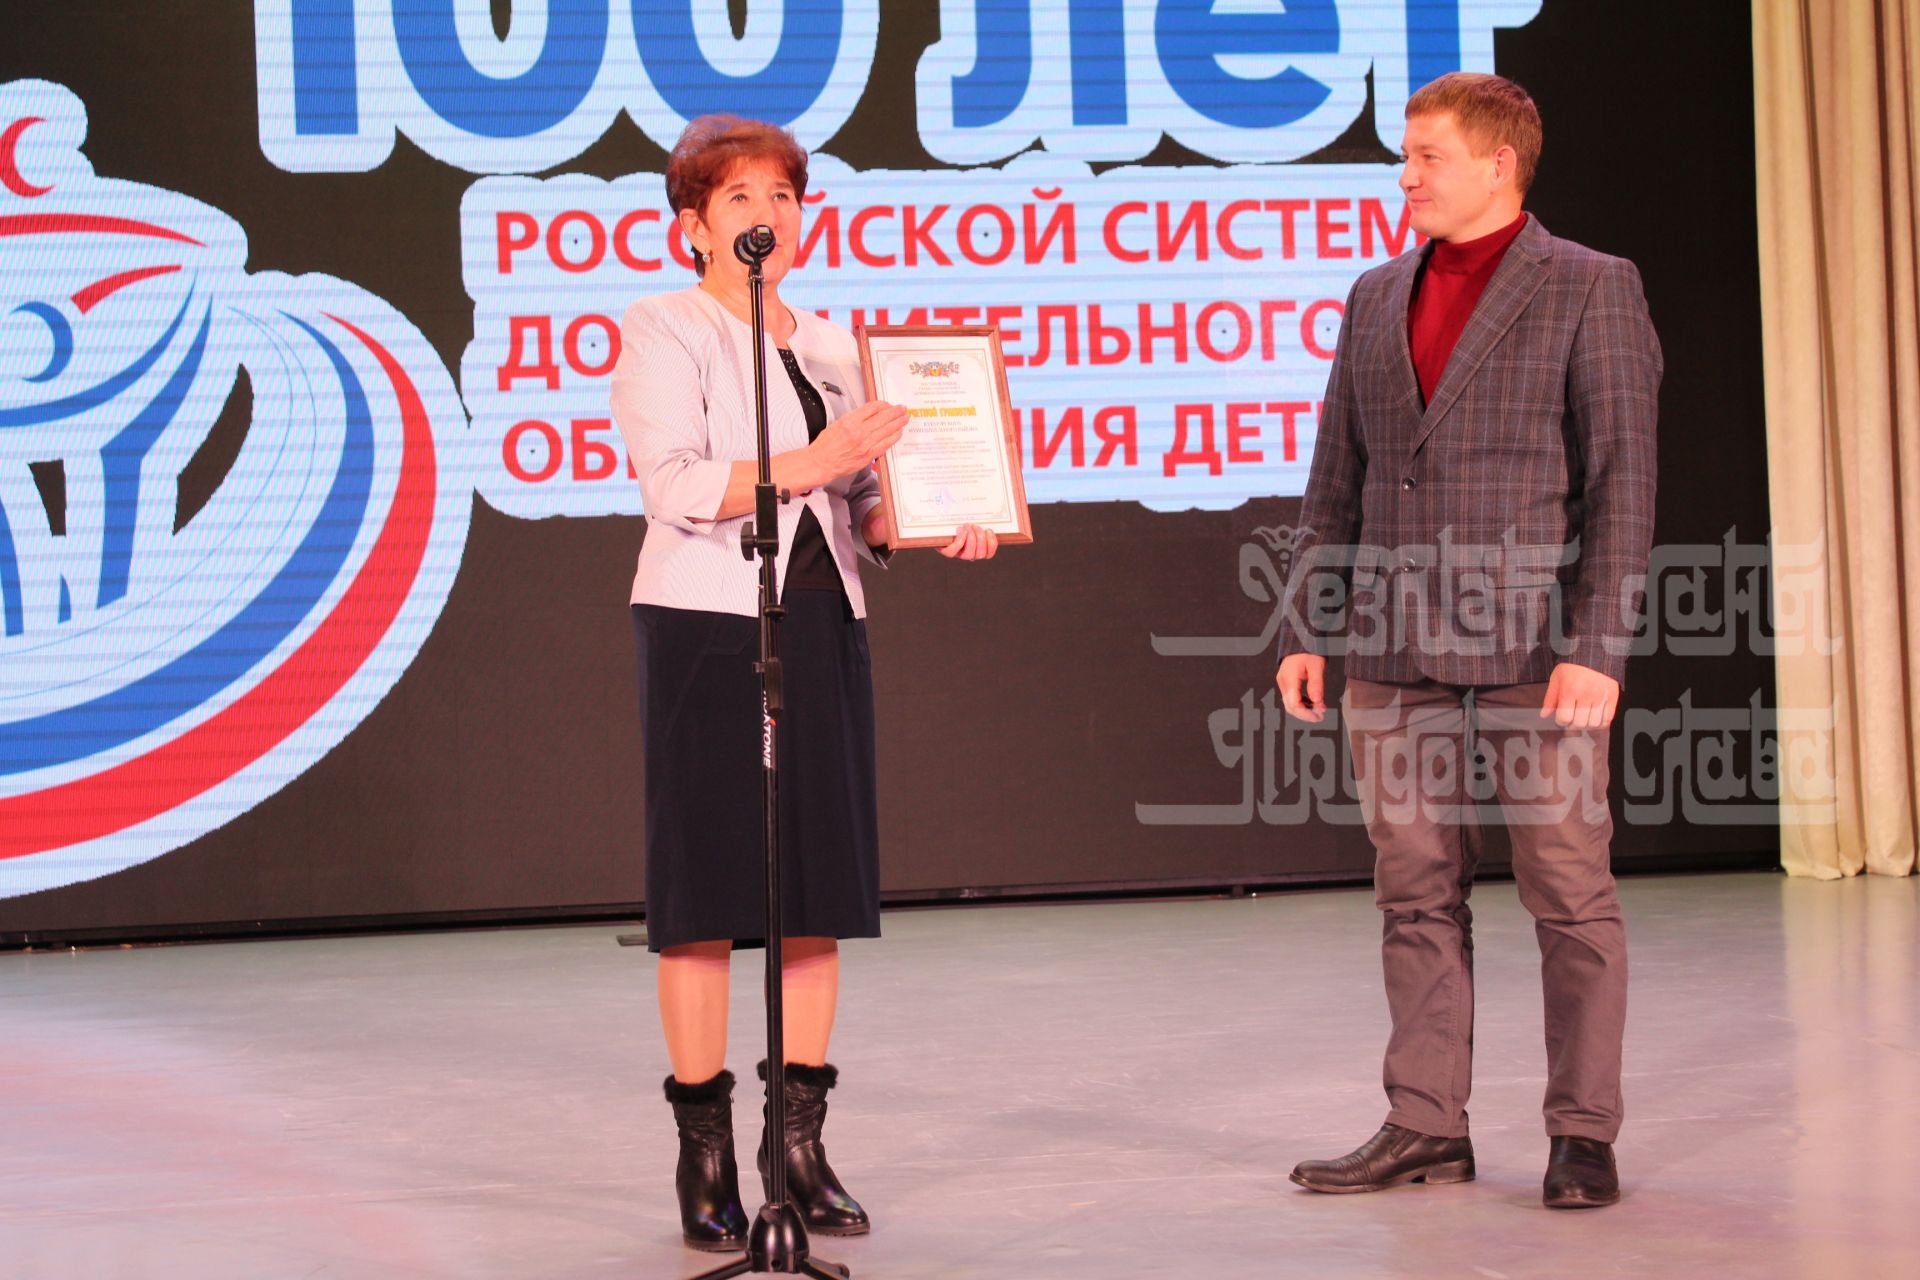 Фото: Кукмарада Россиядә балаларга мәктәпкәчә өстәмә белем бирү системасы оешуның 100 еллыгы уңаеннан бәйрәм үткәрелде